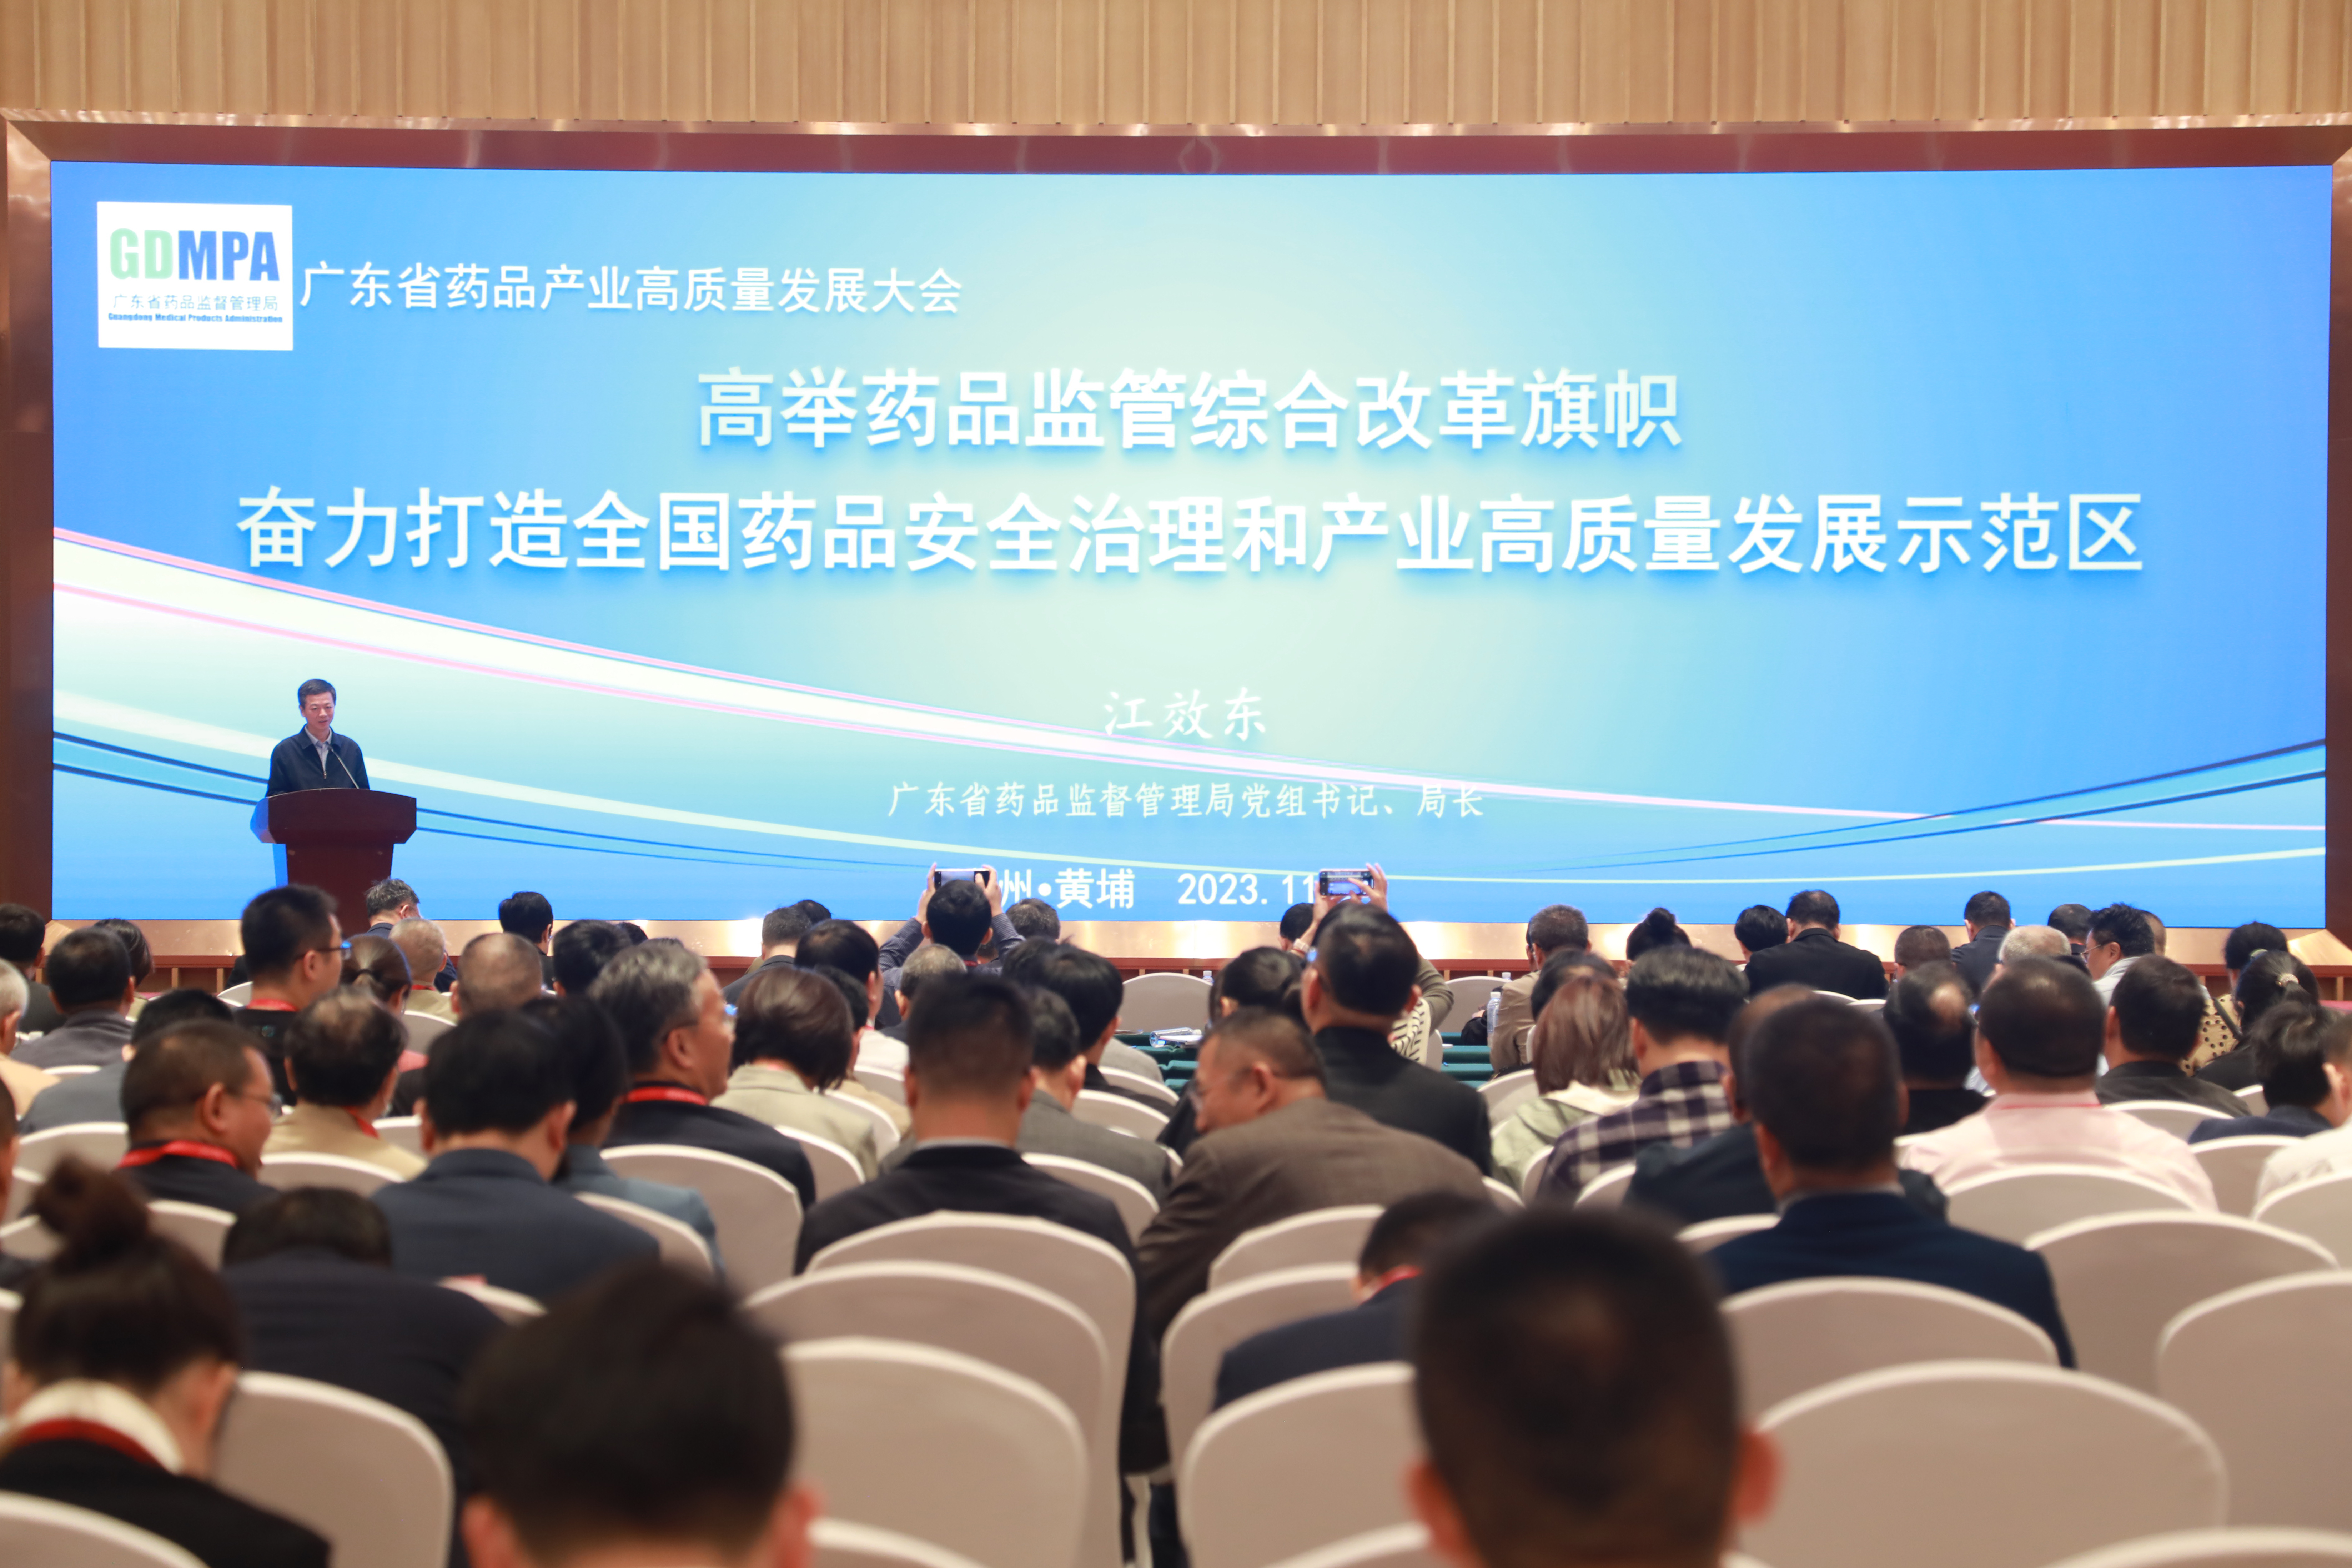 广东省药品监督管理局党组书记、局长江效东在大会上作主题报告